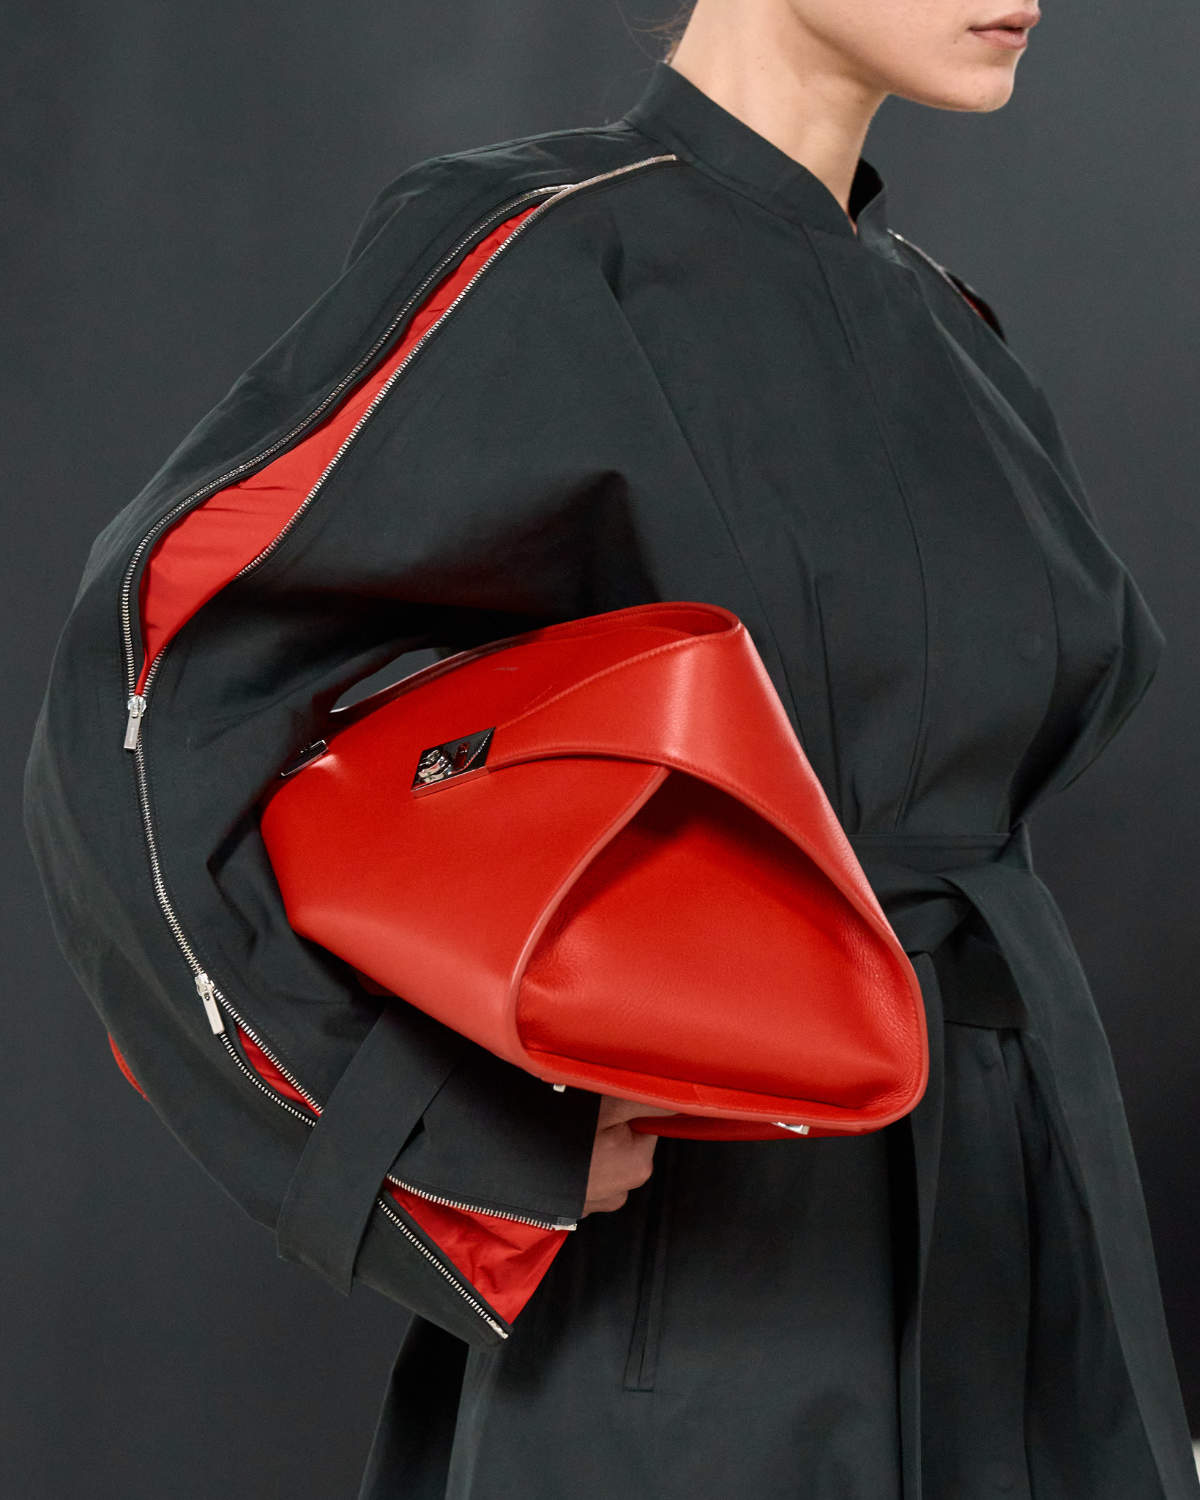 Ferragamo Presents Its New Hug Bag